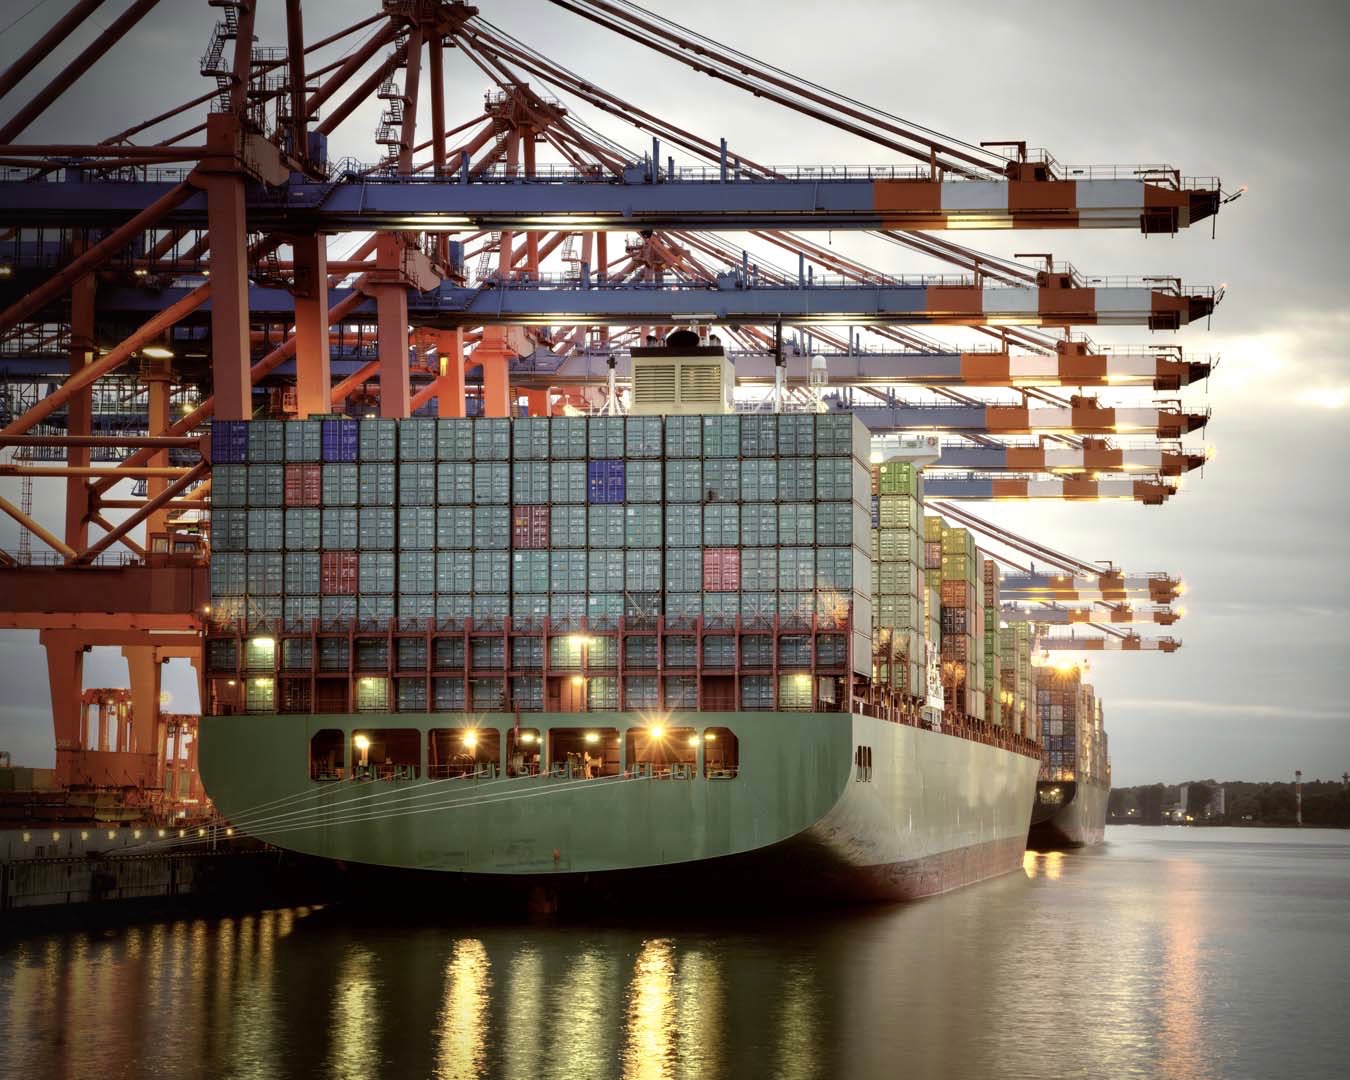 Porti del Tirreno Meridionale e Jonio: tasse di ancoraggio ridotte per le navi commerciali